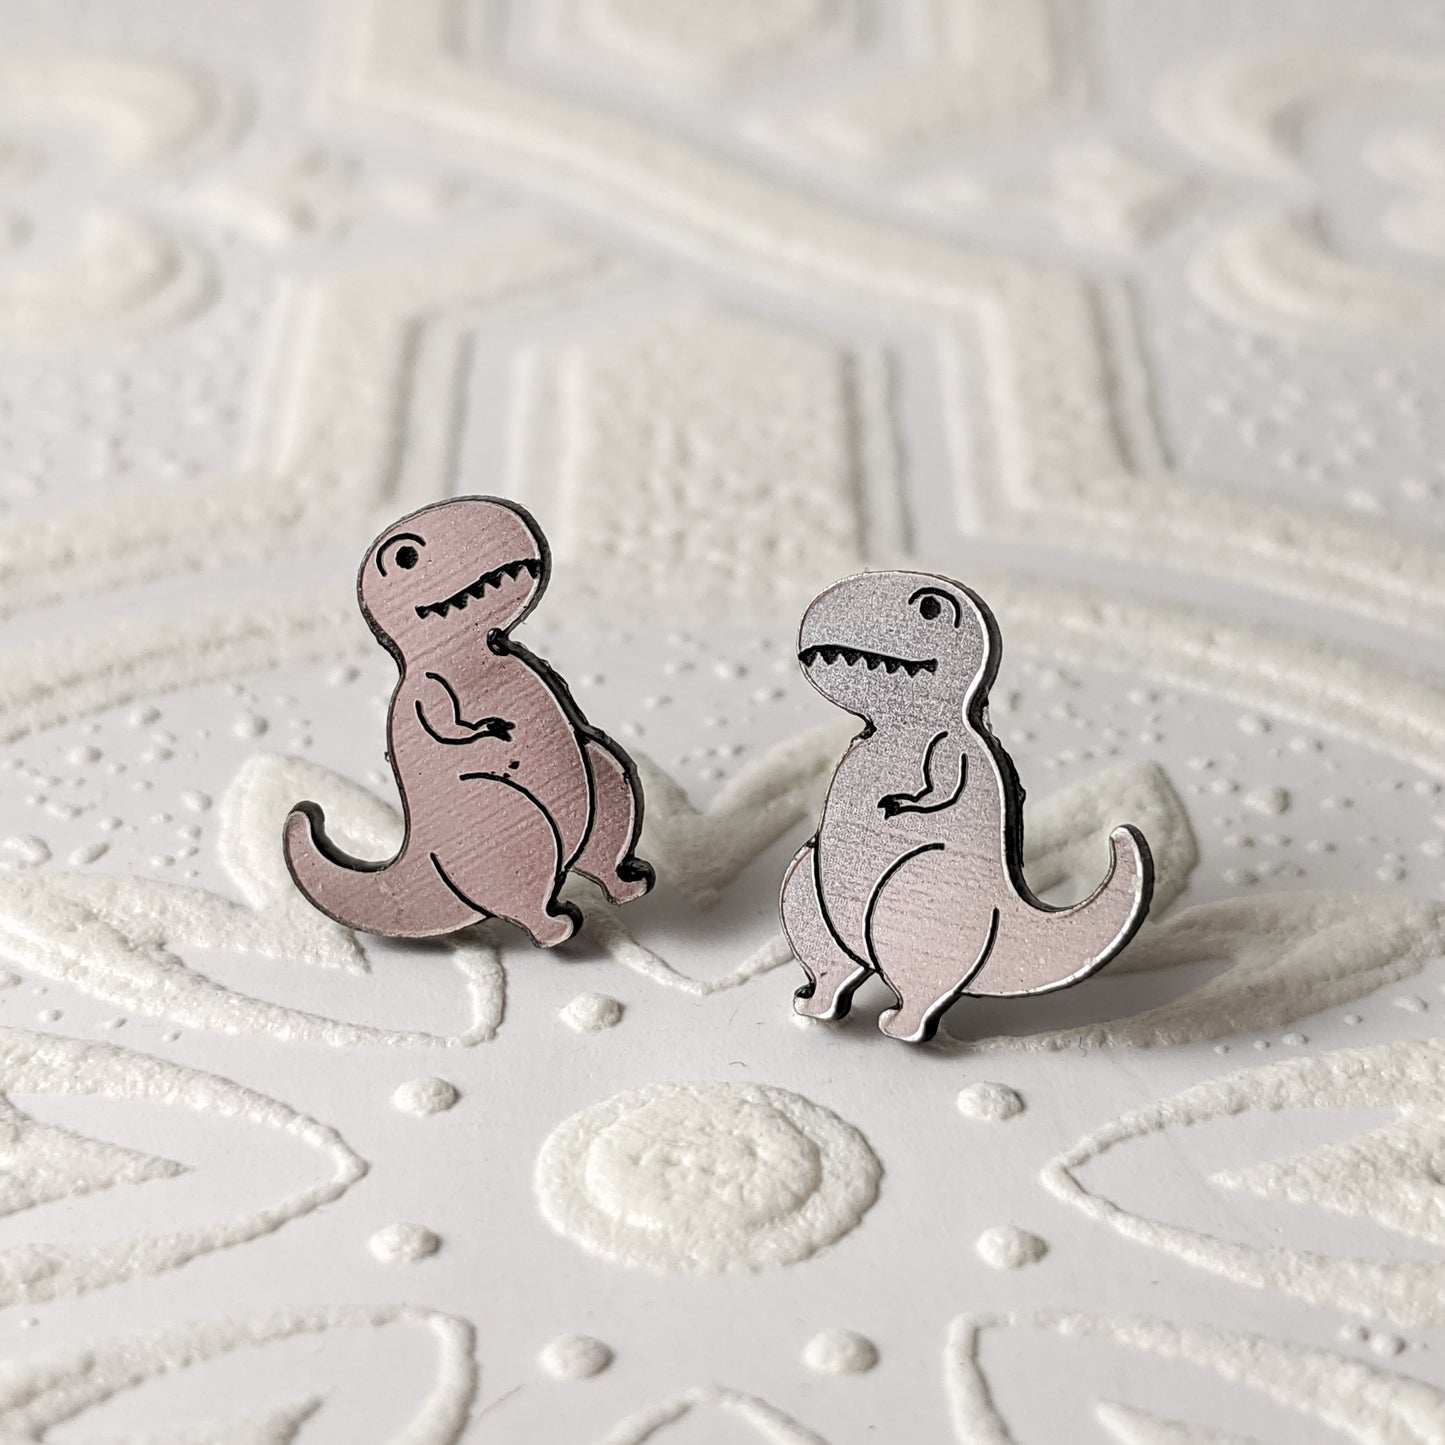 T-Rex Dino Stud Earrings, Silver